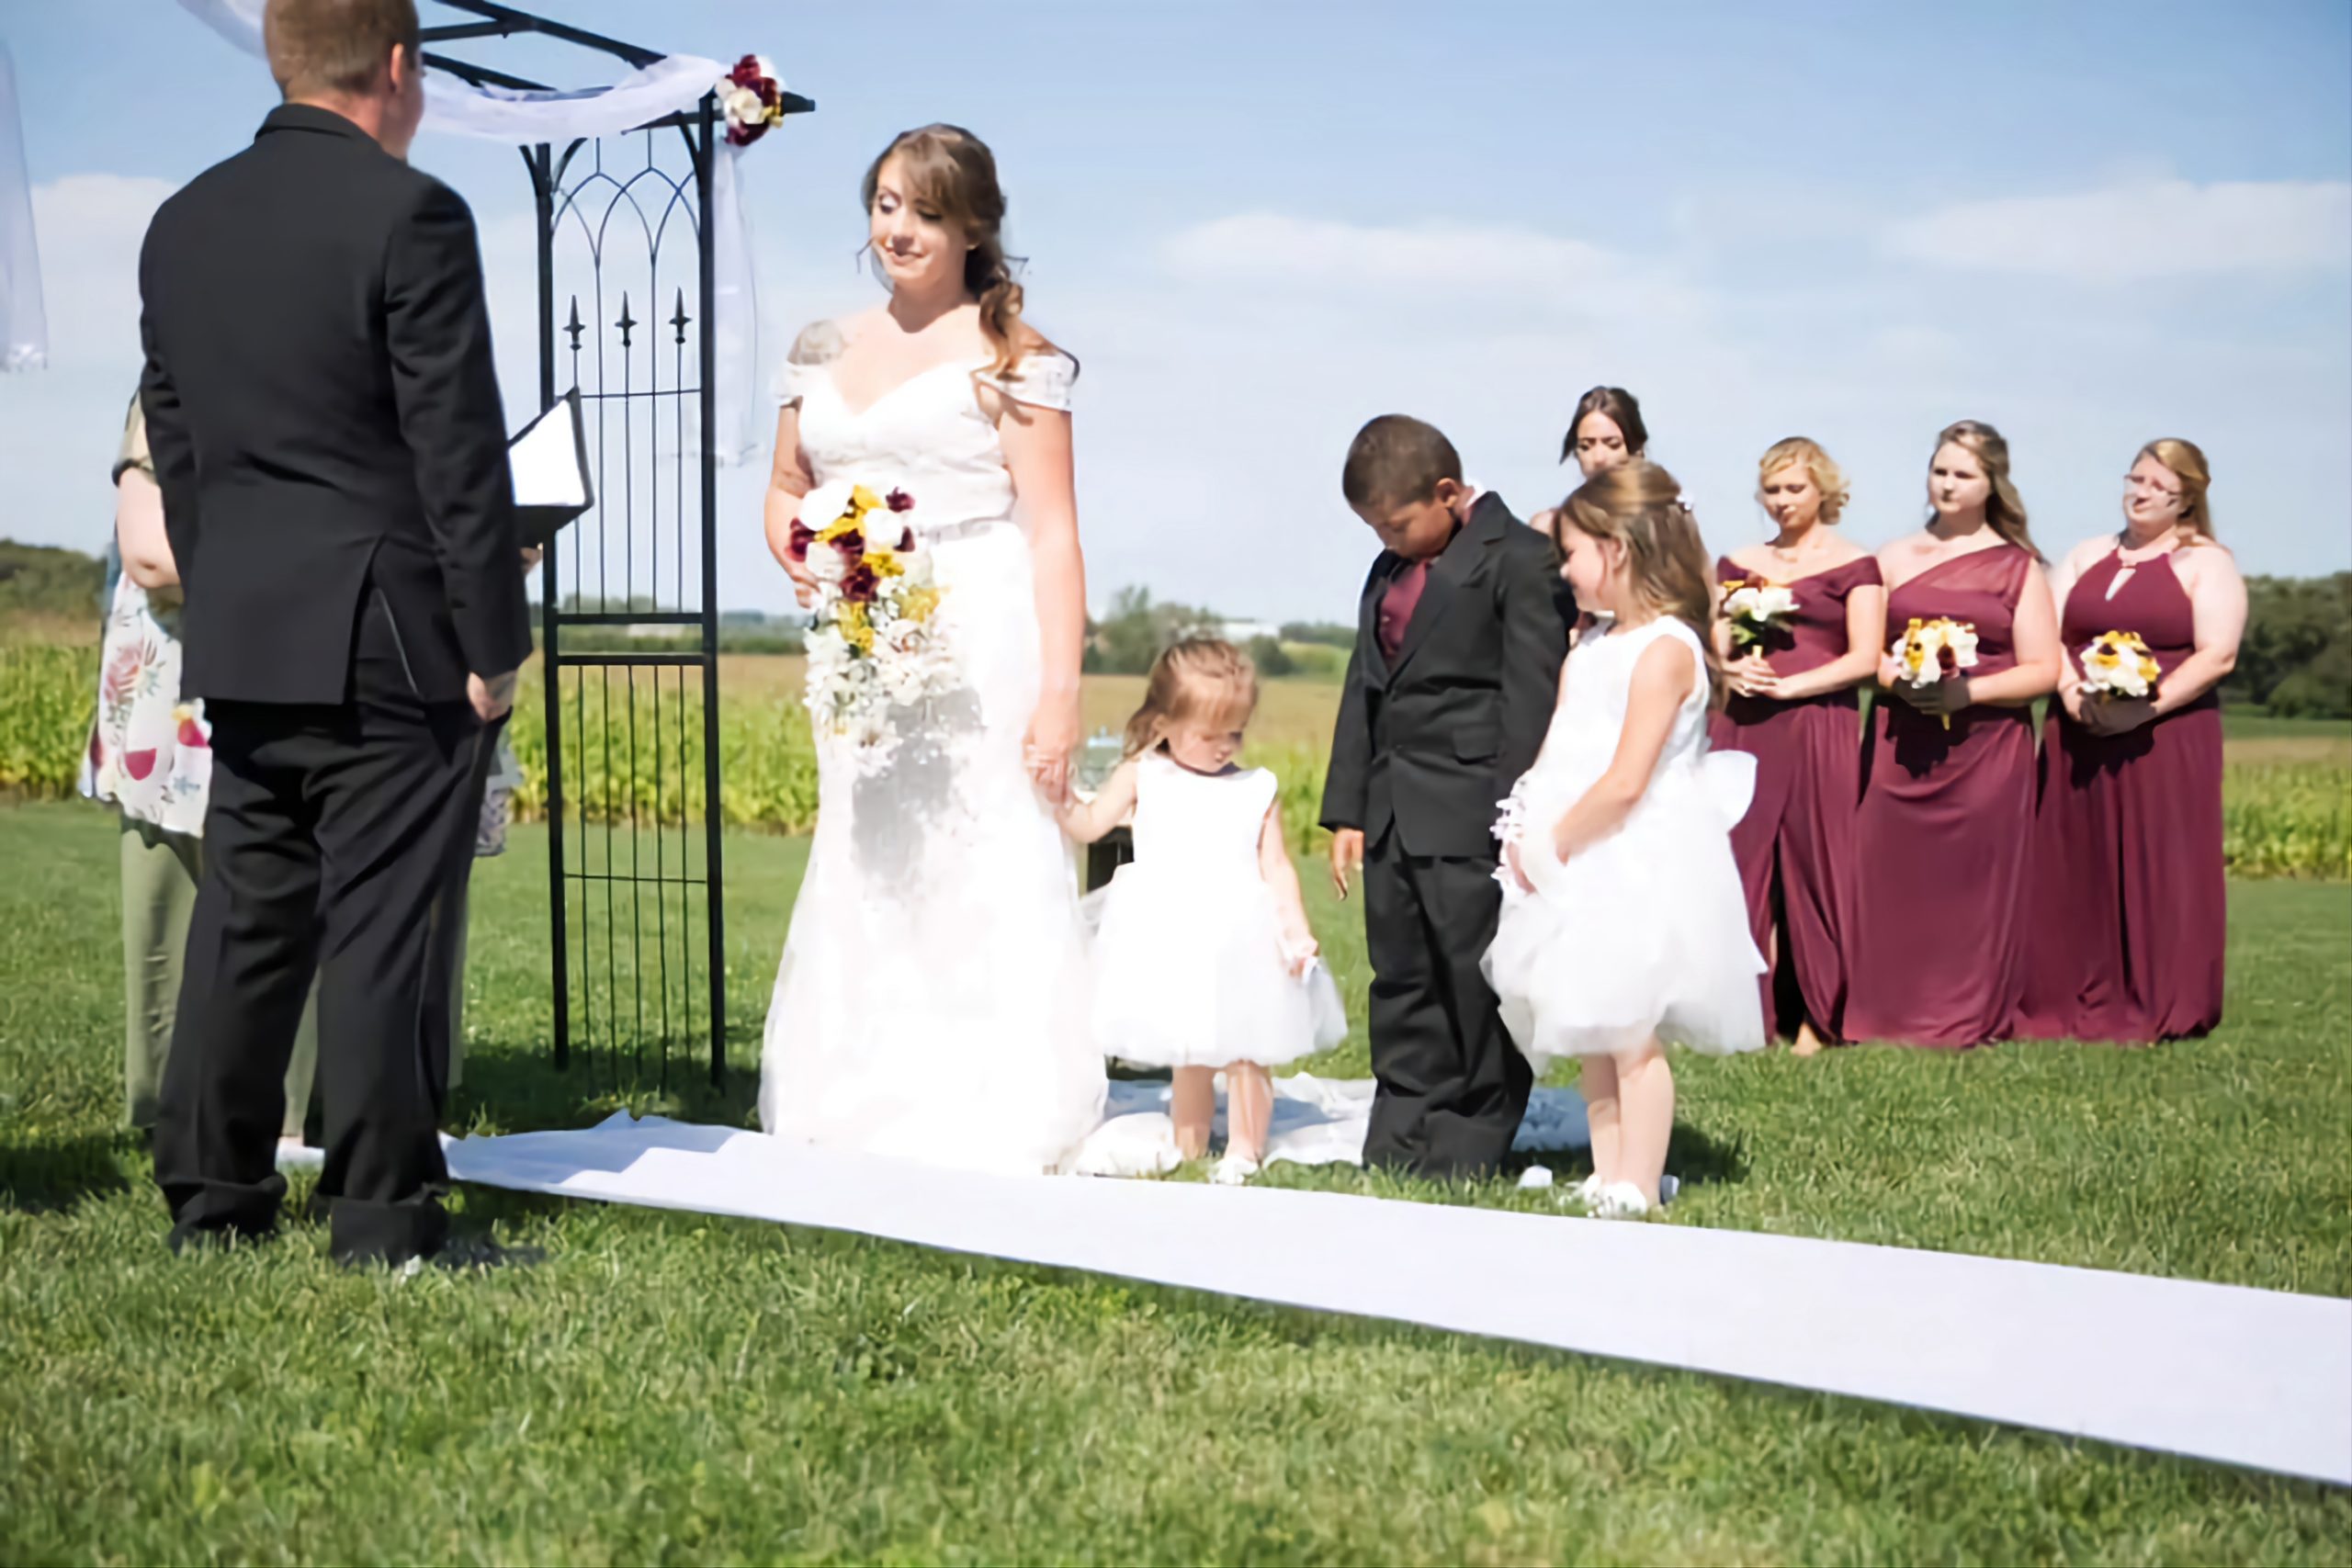 Top 7 Wedding Venues in Kenosha, Wisconsin